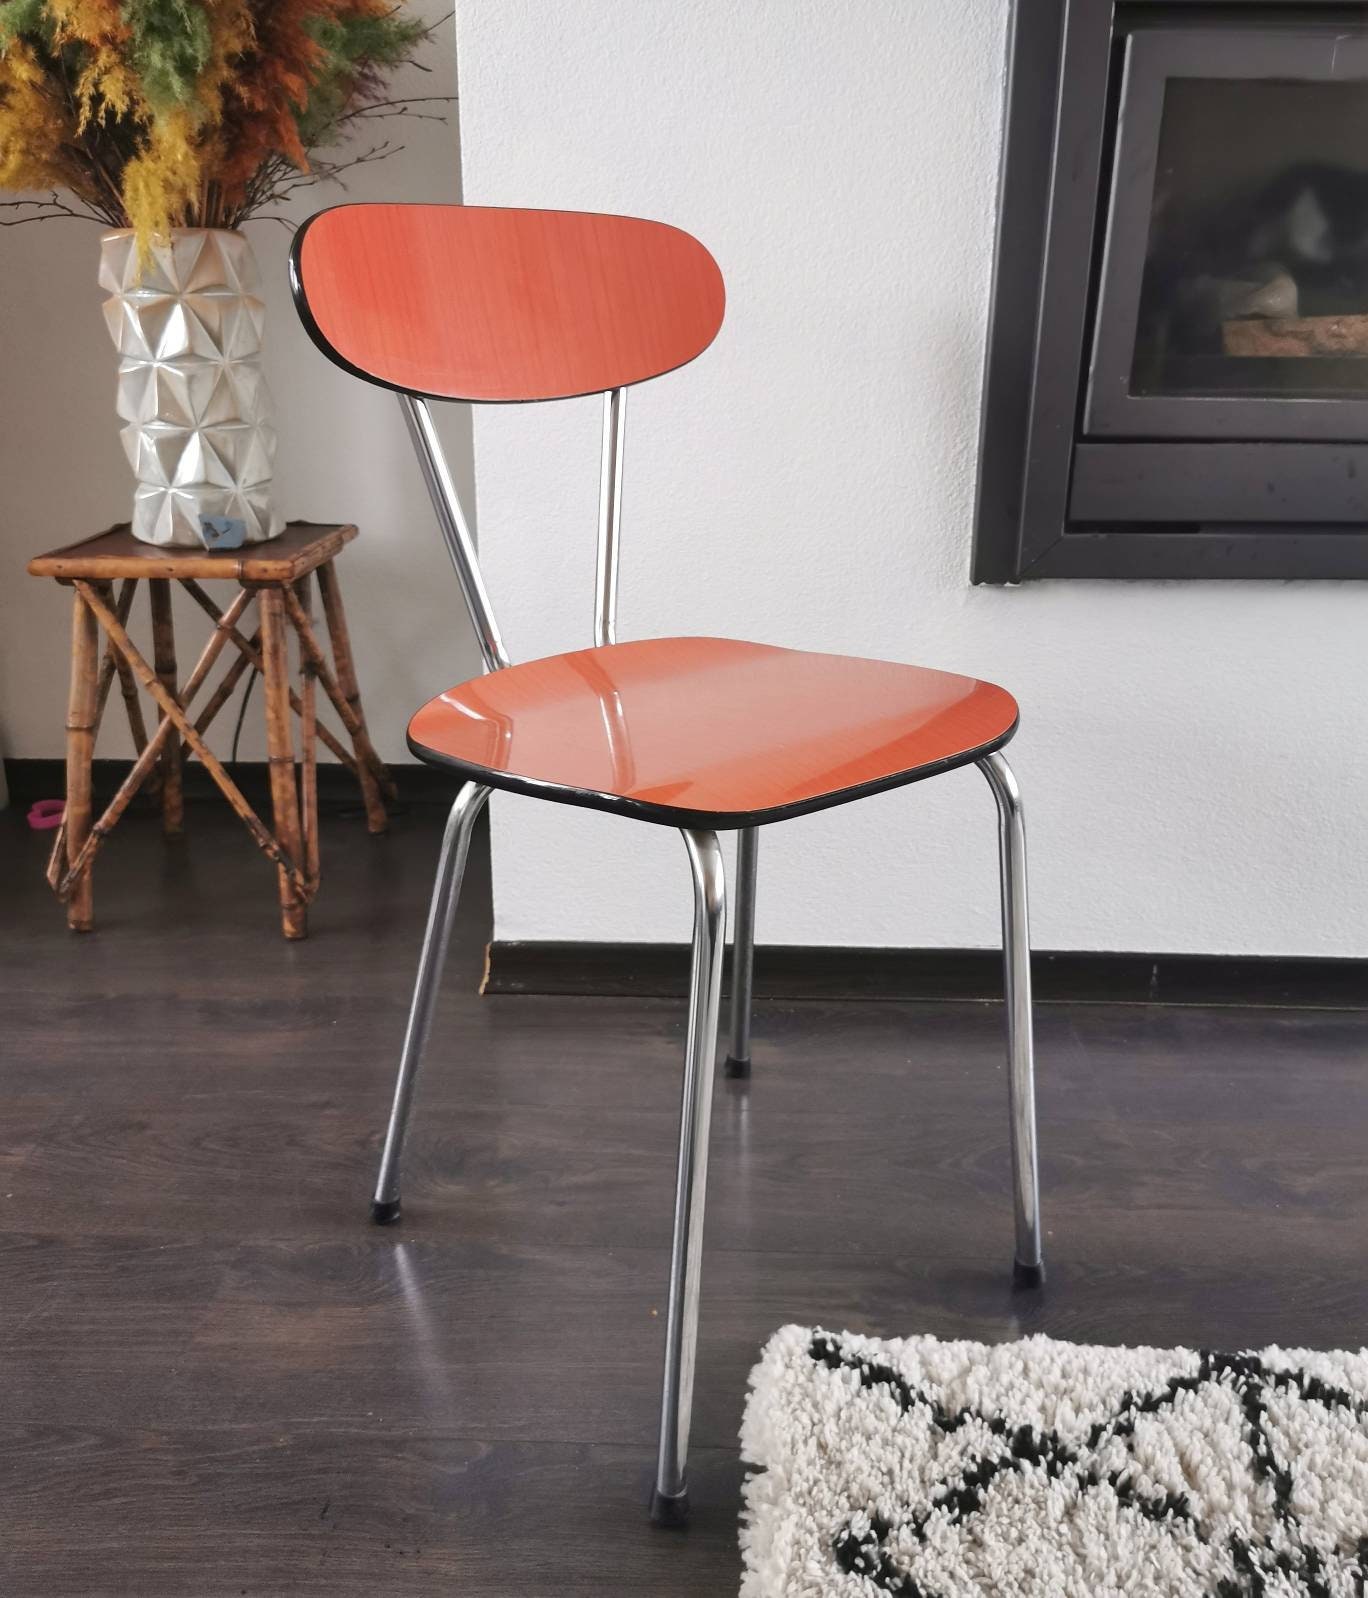 Het formulier galblaas Ongepast Vintage chromen stoel met oranje kunststof zitting en leuning - Etsy  Nederland